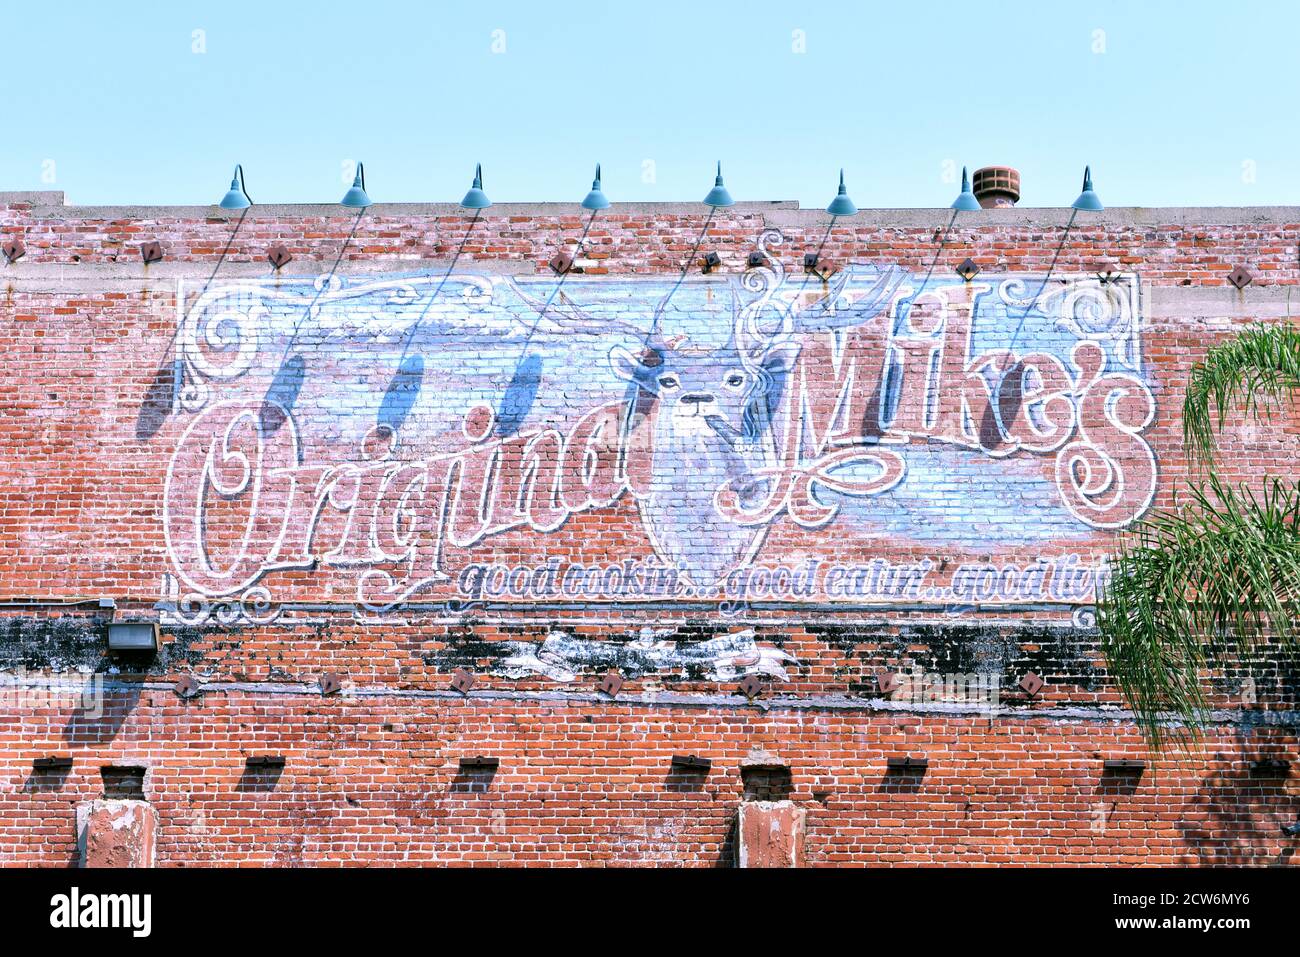 SANTA ANA, CALIFORNIA - 20 AGOSTO 2020: Il ristorante Original Mike's, sulla Main Street, occupa quella che un tempo era la prima carrozza senza cavalli di Santa Ana Foto Stock